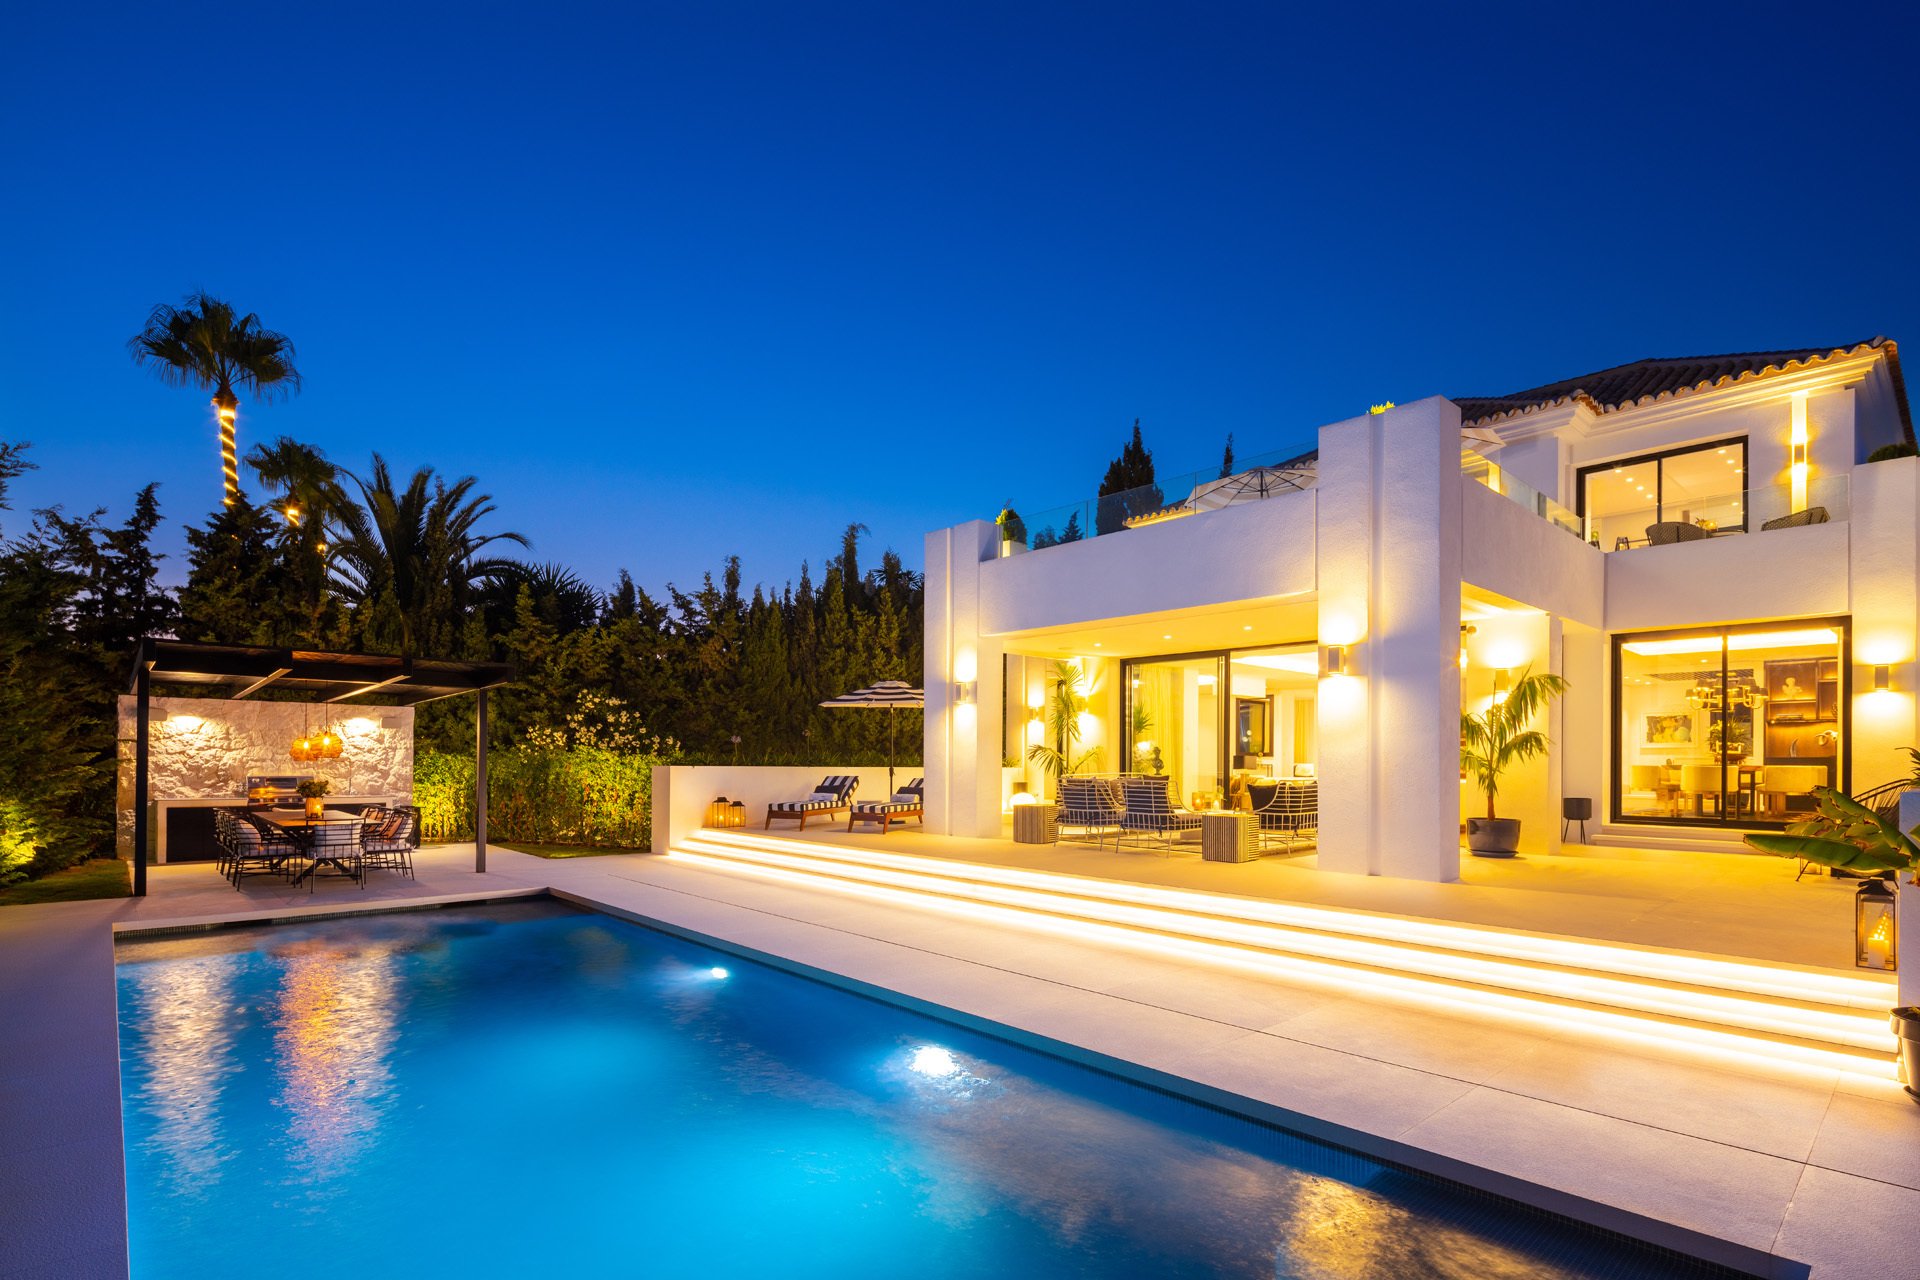 Marbella, Marbella: Where Hot White Villas And Still Sea Waters Meet